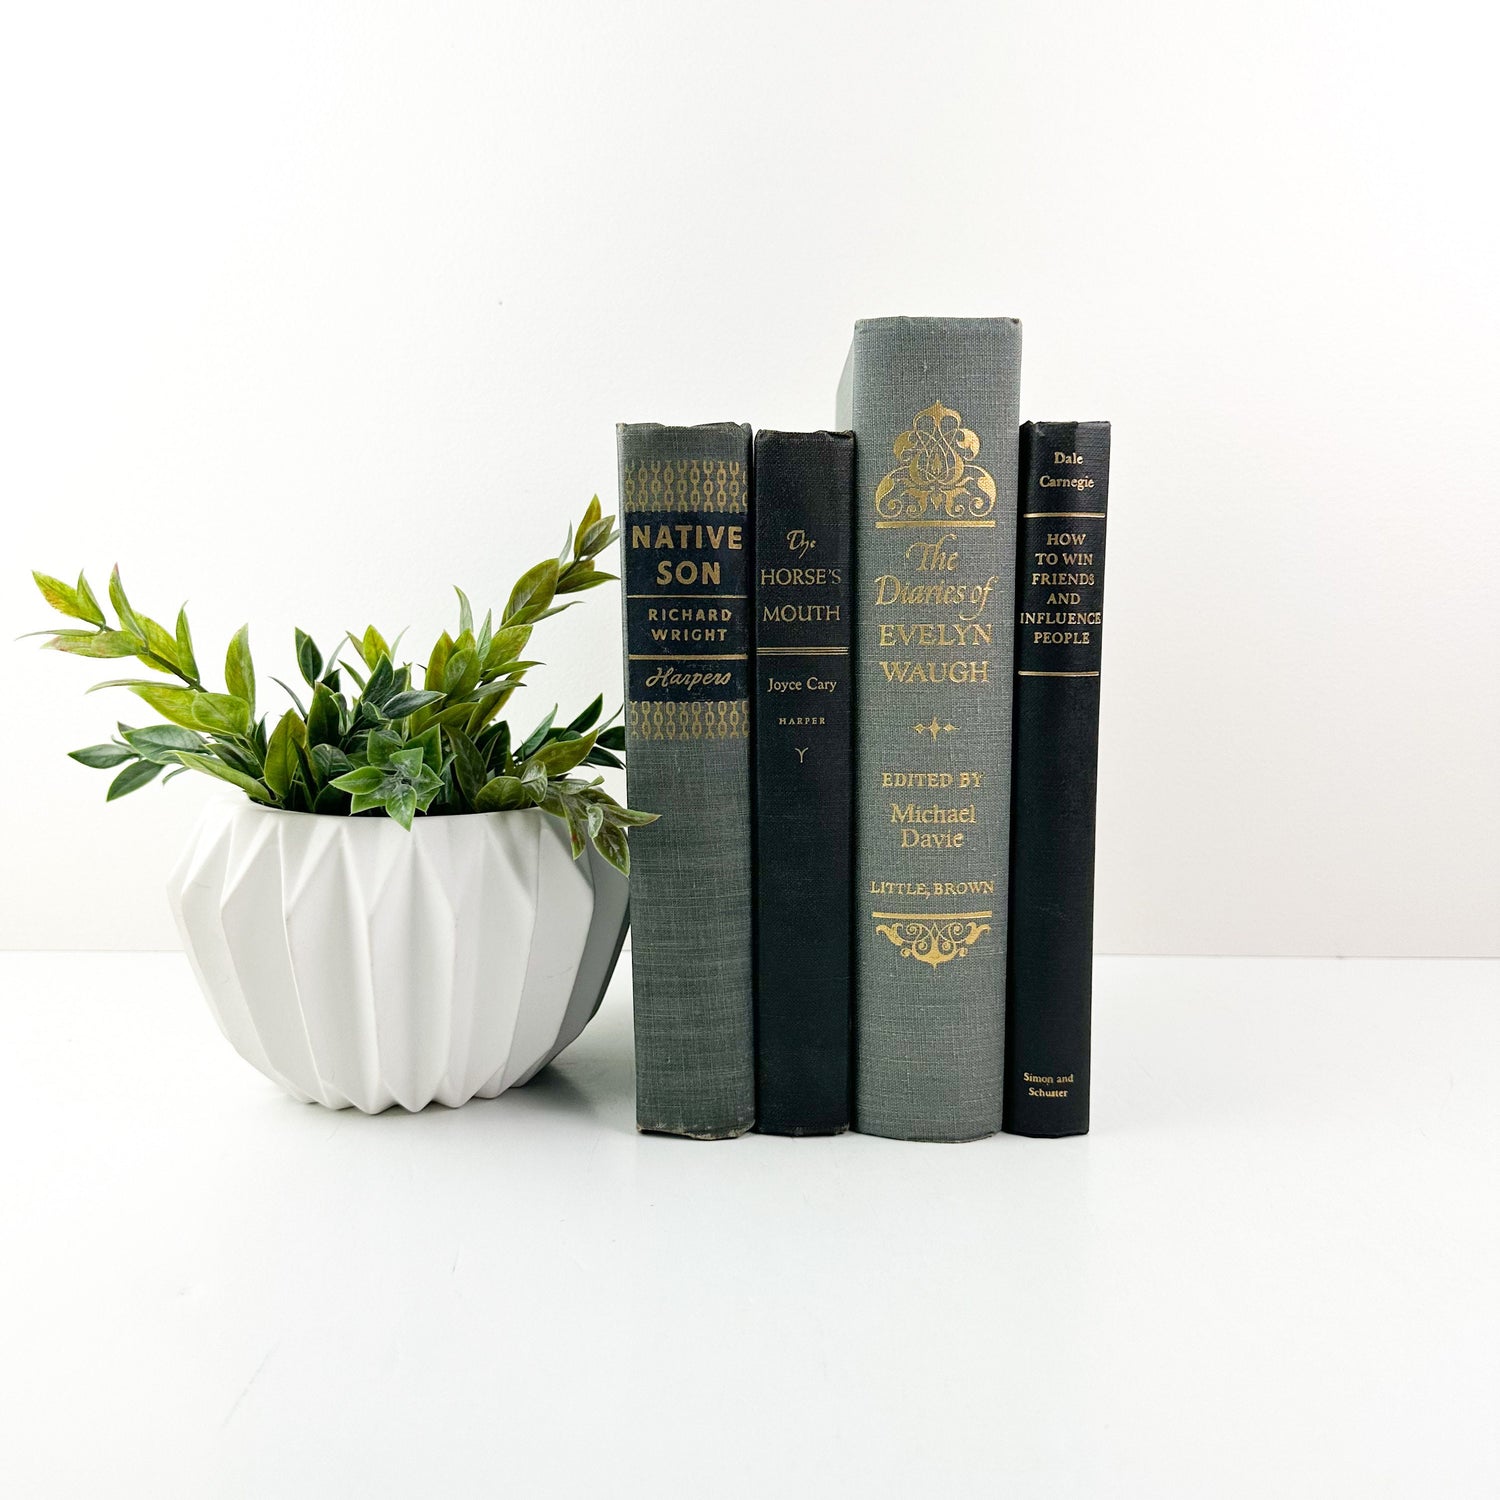 Gray Decorative Books for Living Room Decor, Book Set for Shelf Decor, Book Bundle, Table Decor